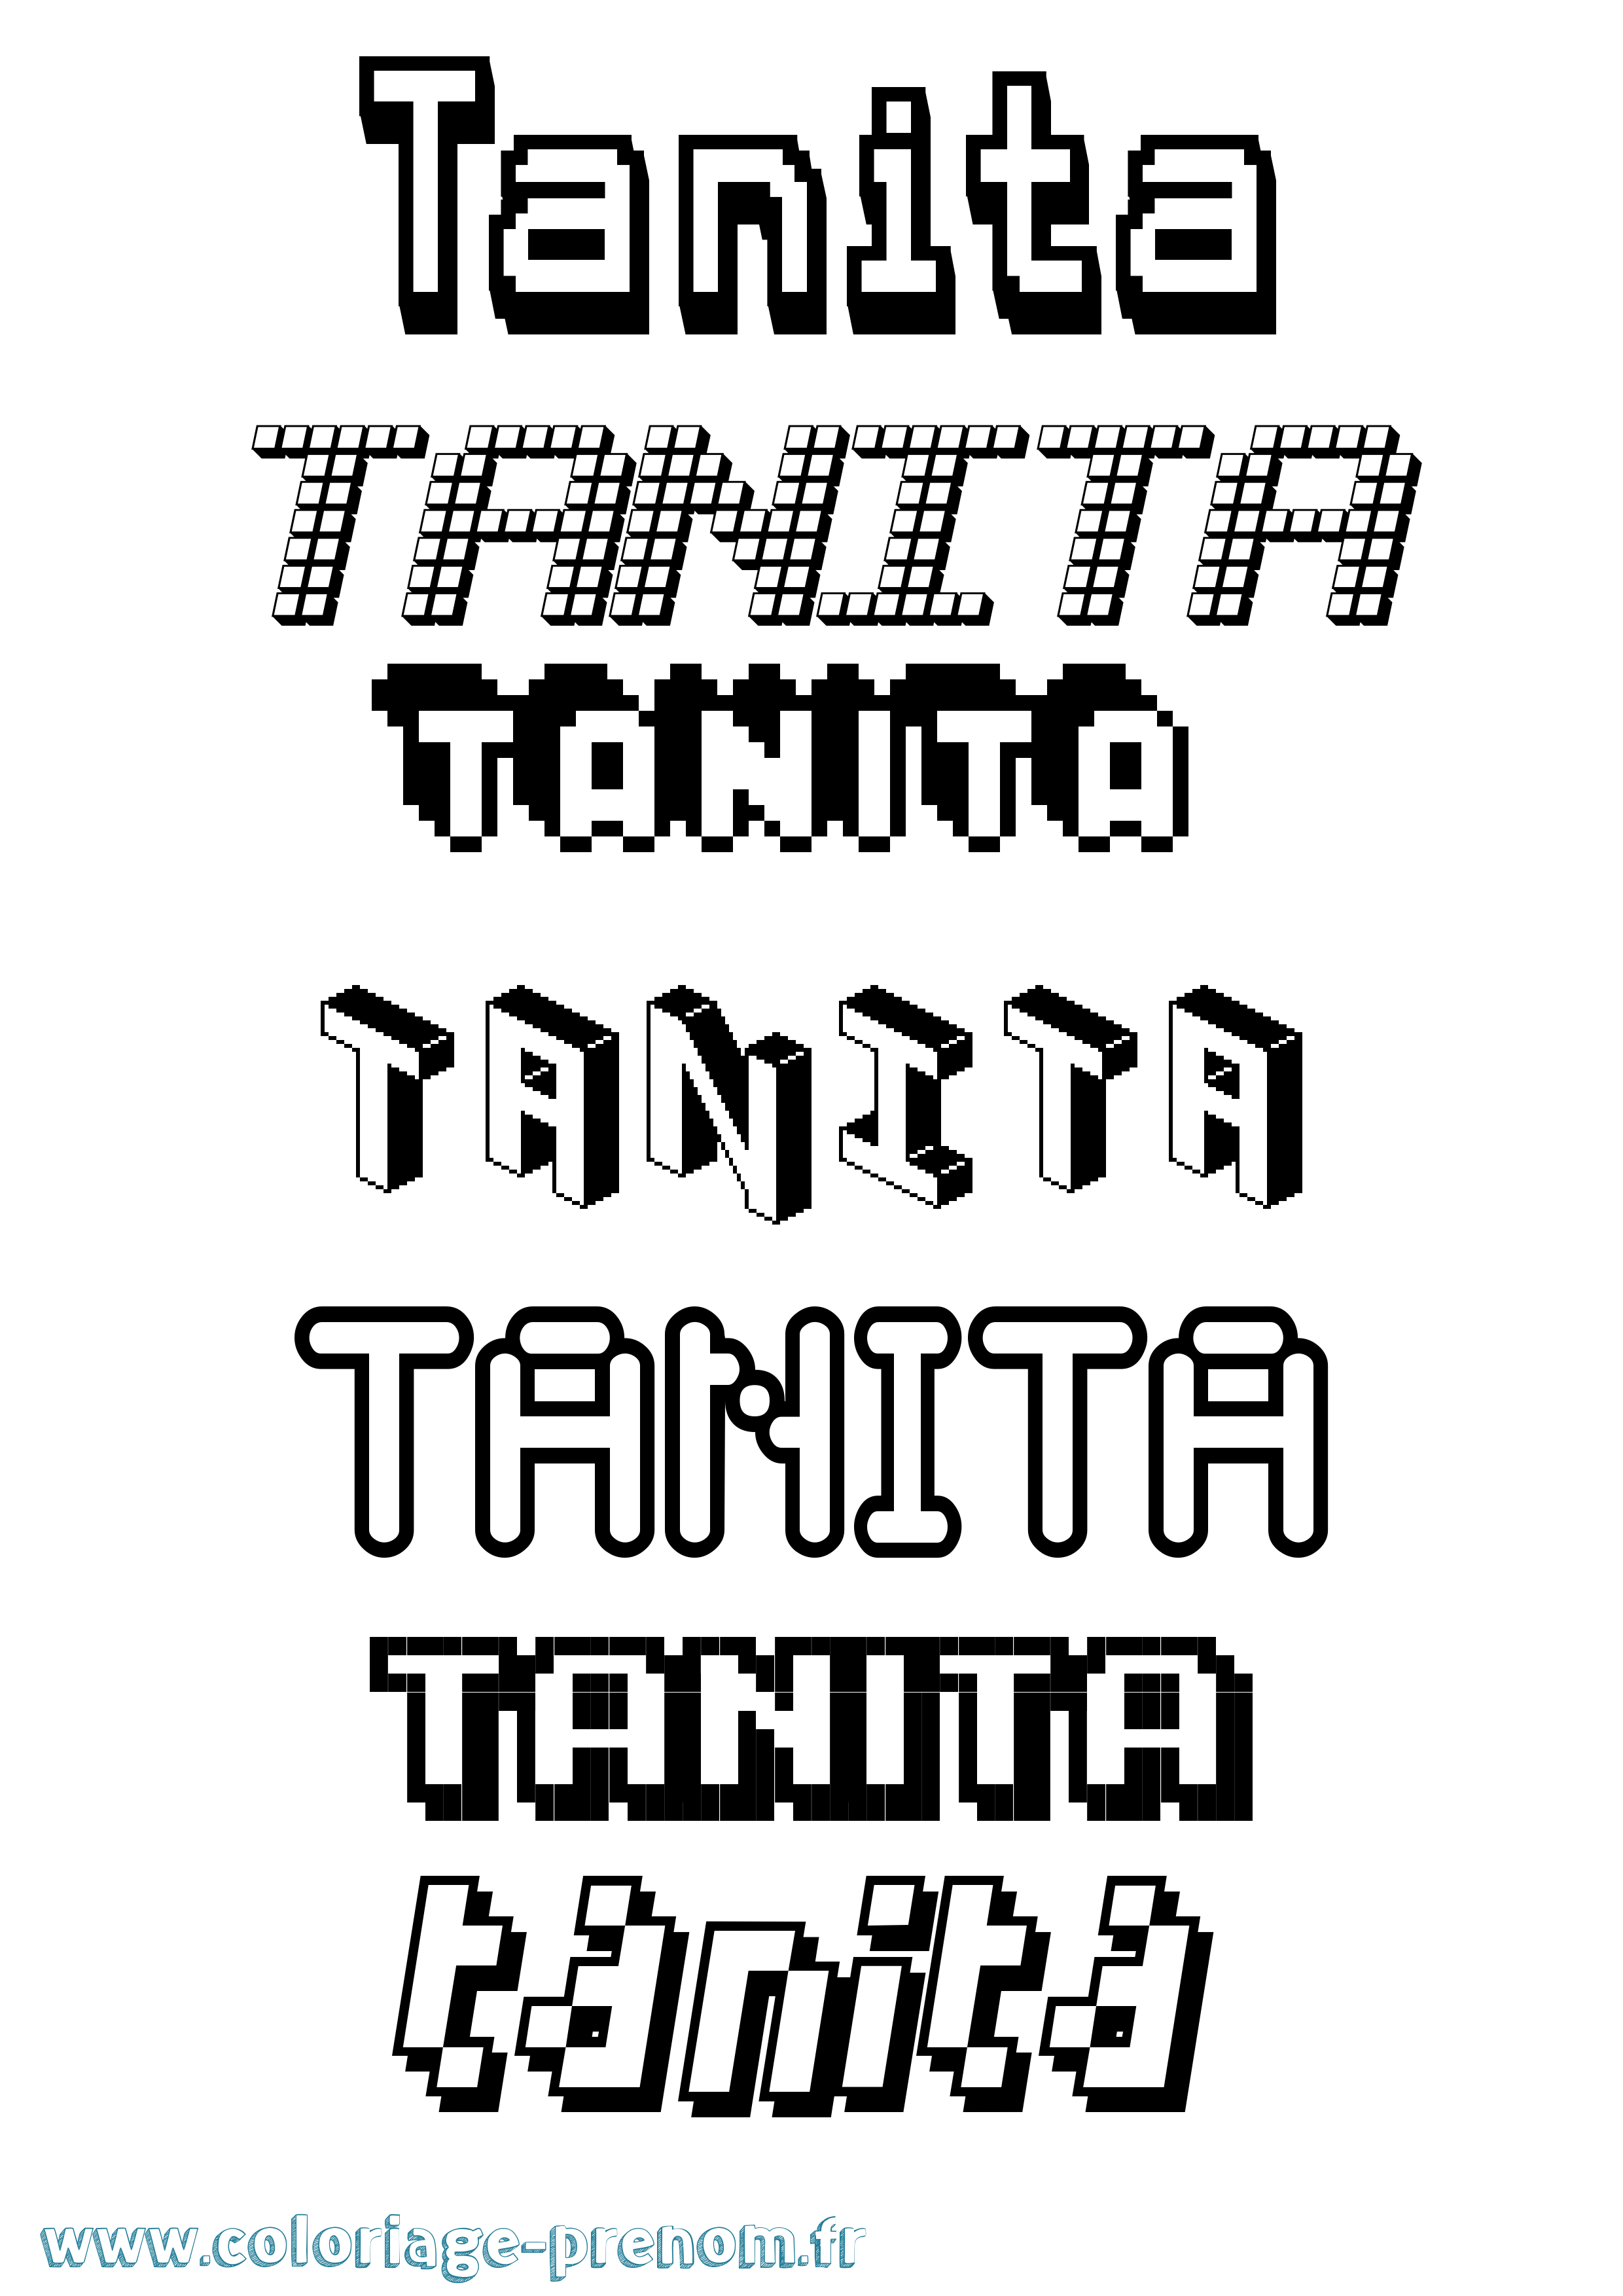 Coloriage prénom Tanita Pixel